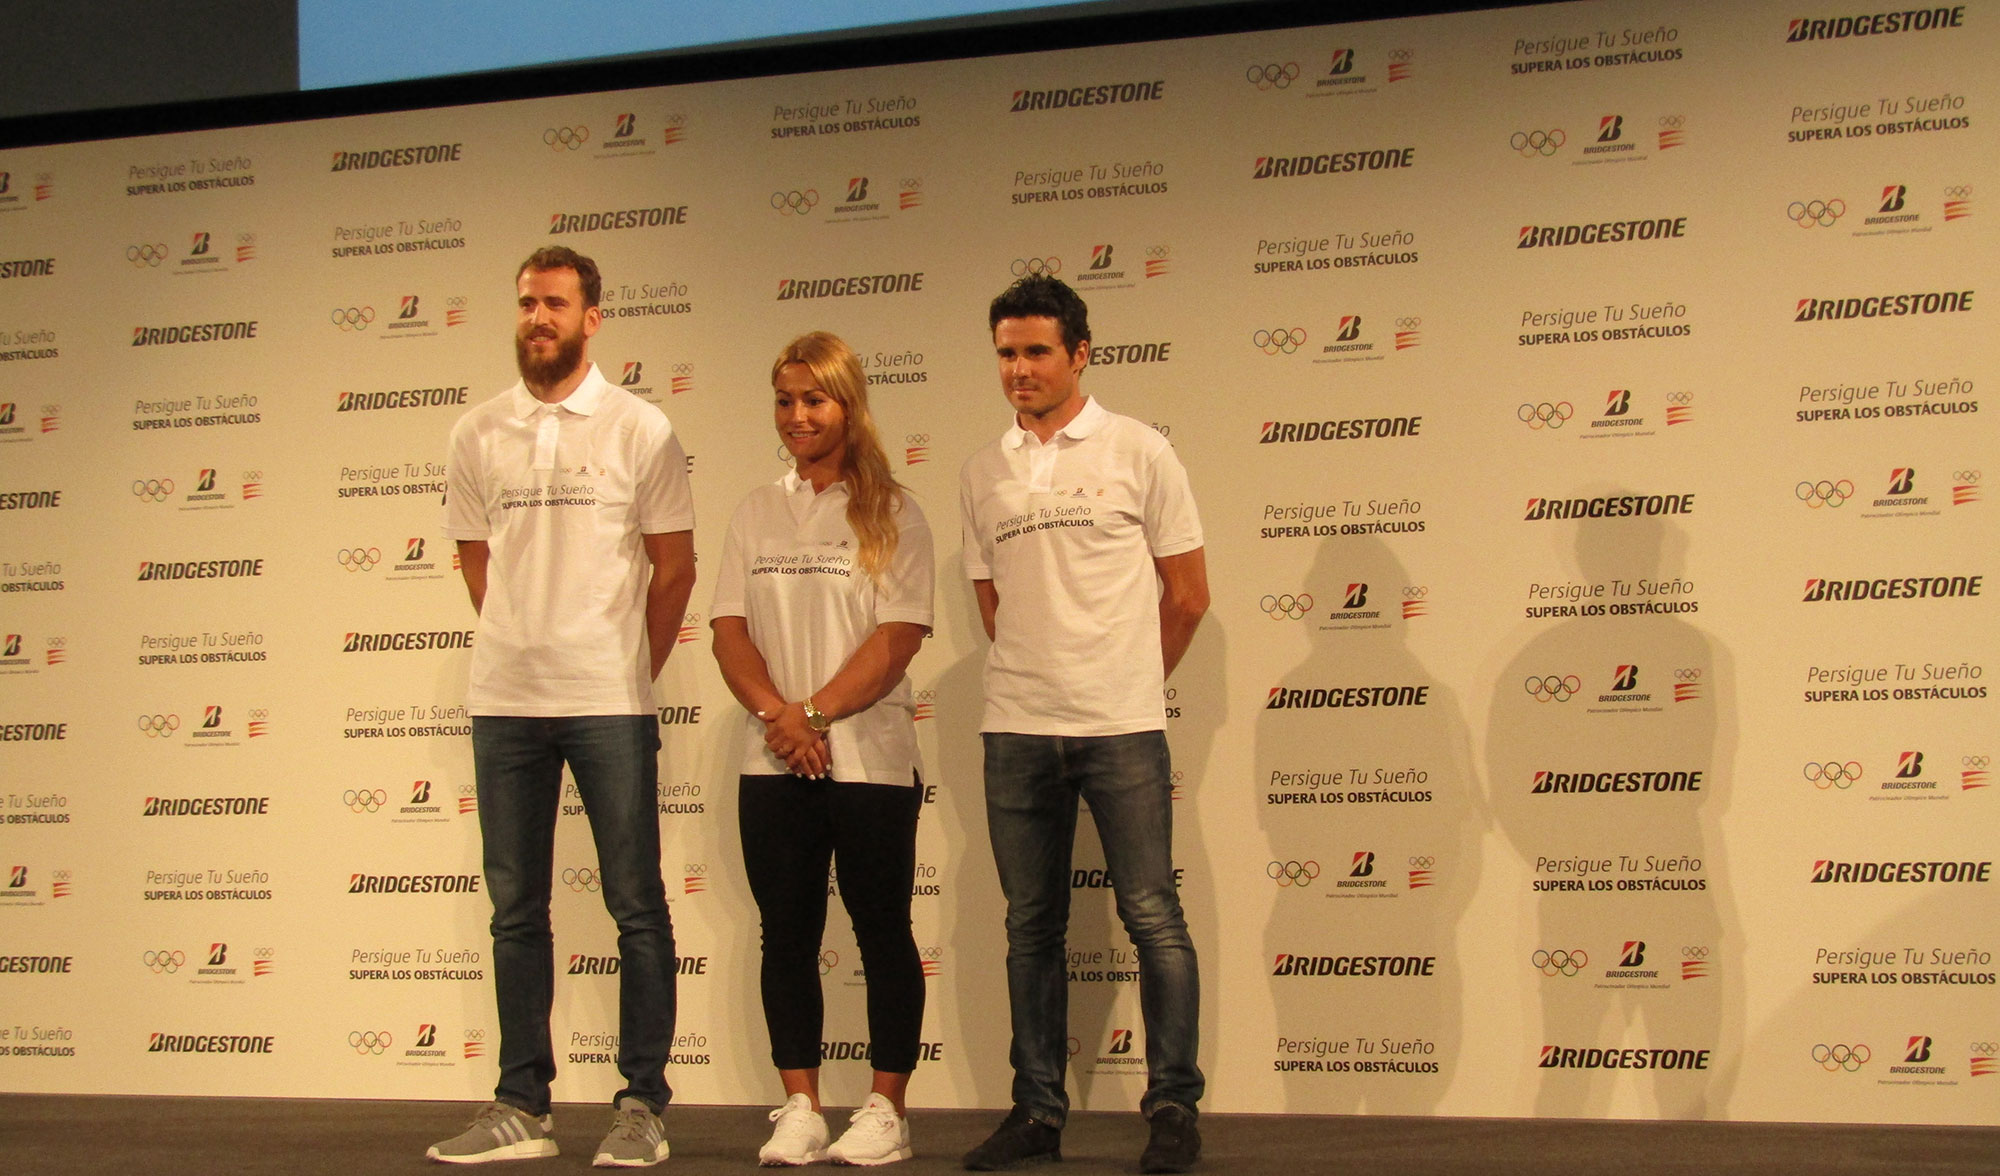 Los tres deportistas posando para los medios en la presentacion del proyecto 'Persigue tu sueo, supera los obstaculos'...